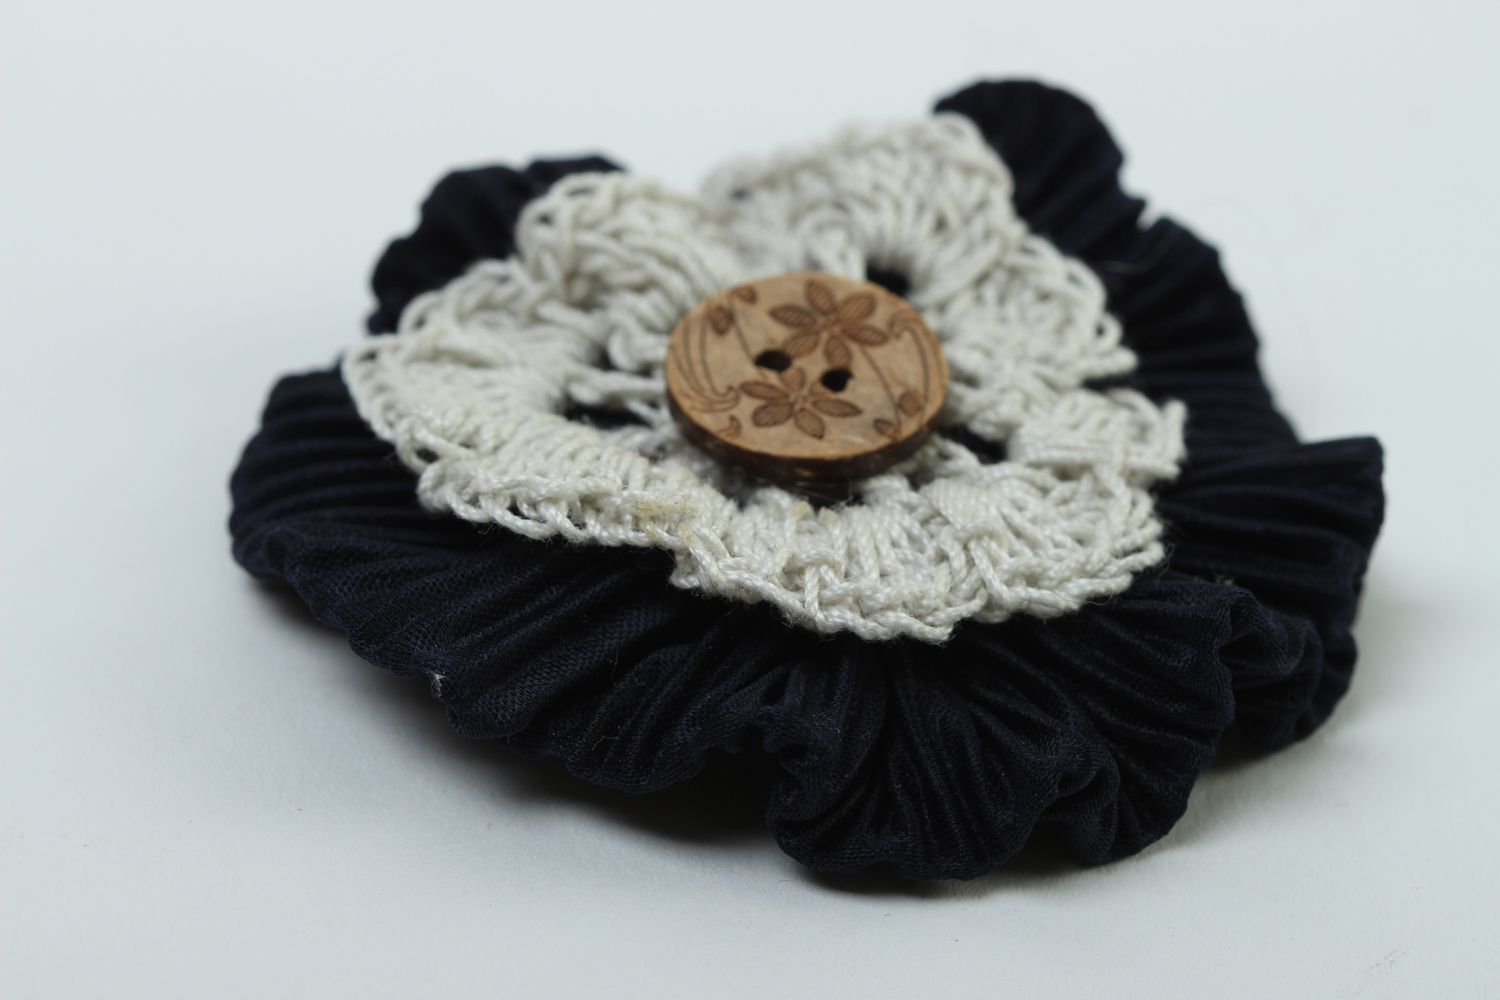 Handmade jewelry supplies crocheted flower crochet flower hair clips supplies photo 3